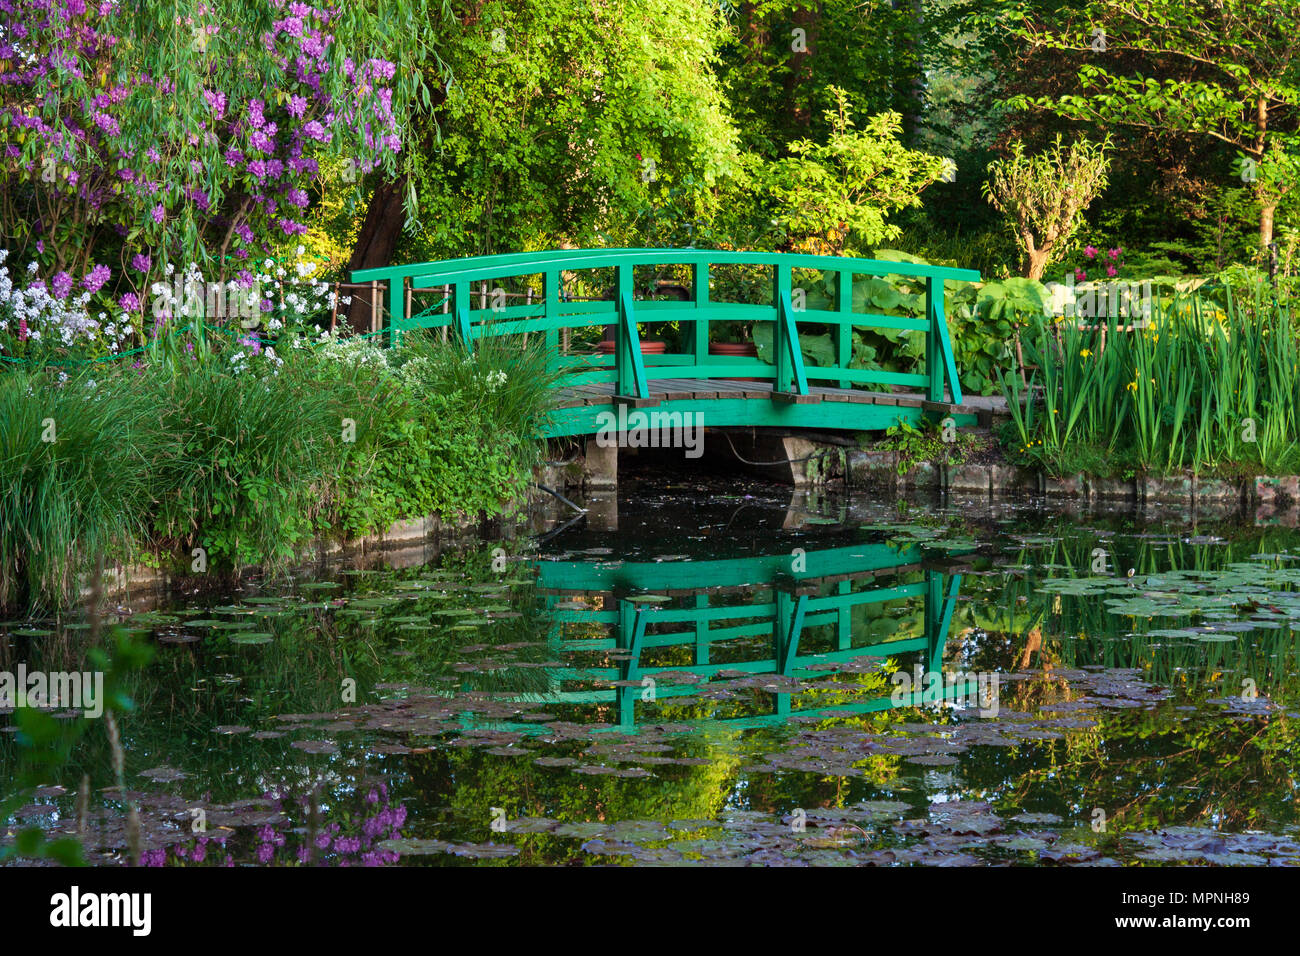 L'eau de Claude Monet à Giverny le jardin, Normandie, France Banque D'Images